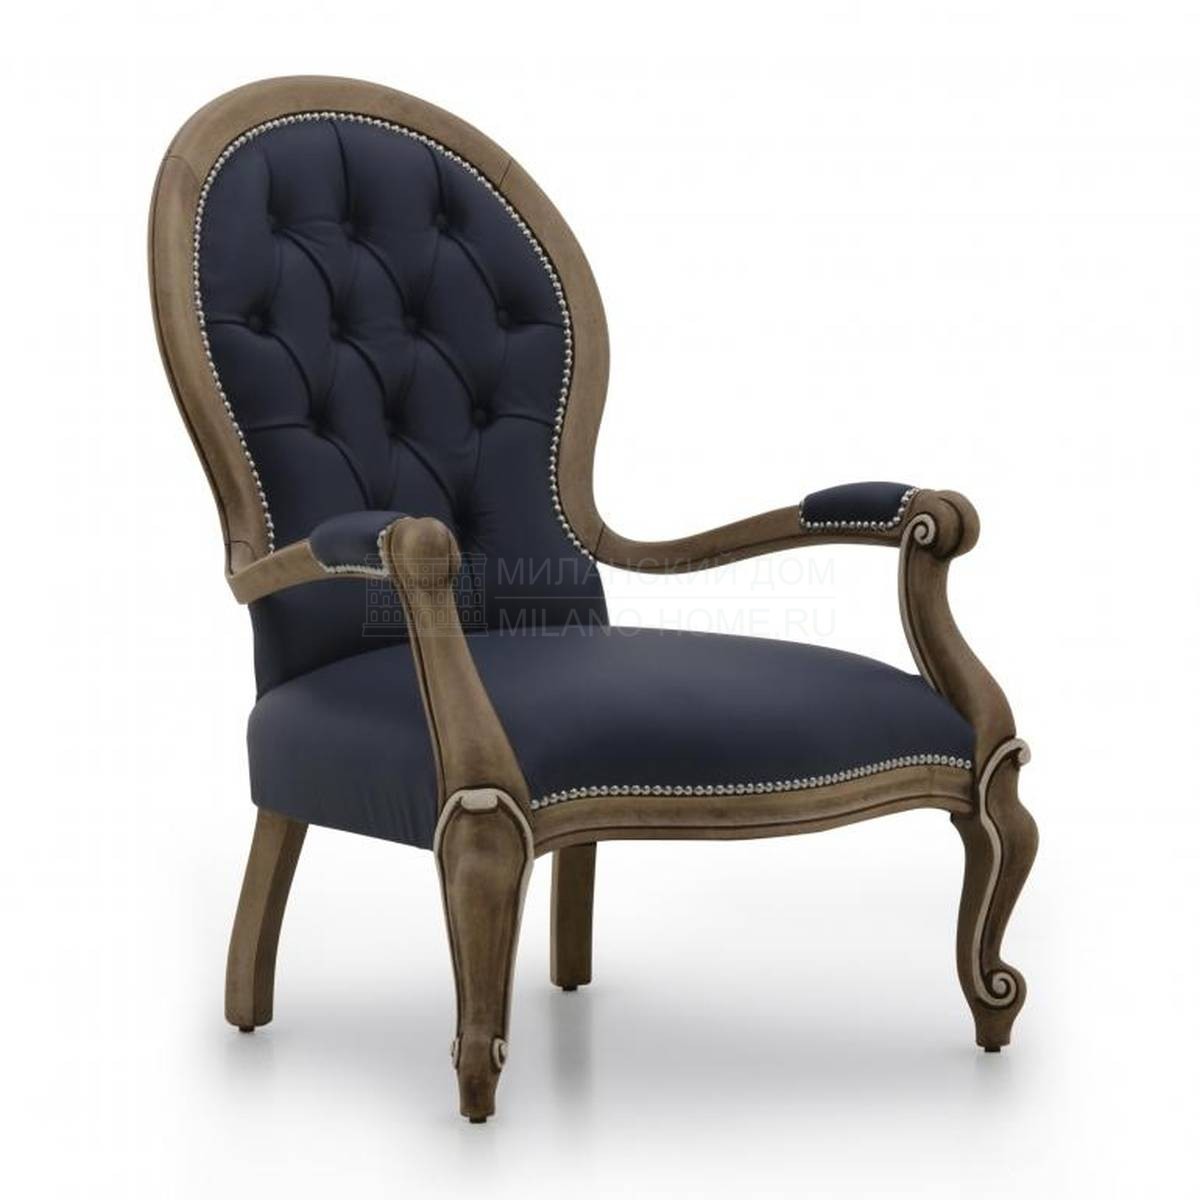 Кожаное кресло Diva leather из Италии фабрики SEVEN SEDIE